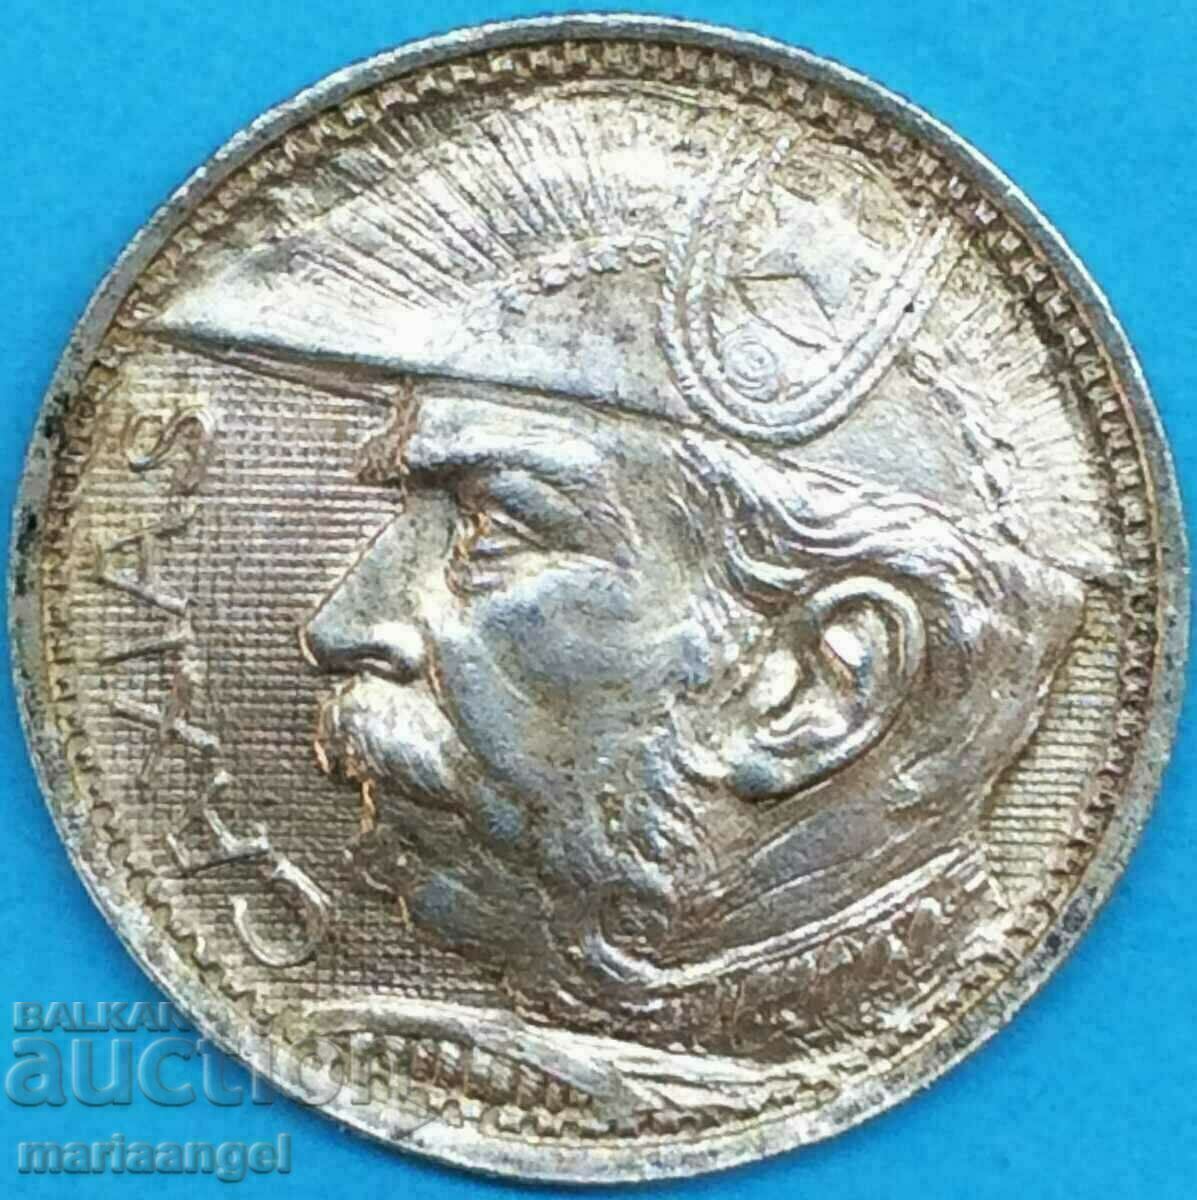 Brazil 1935 2000 reis 8.06g silver